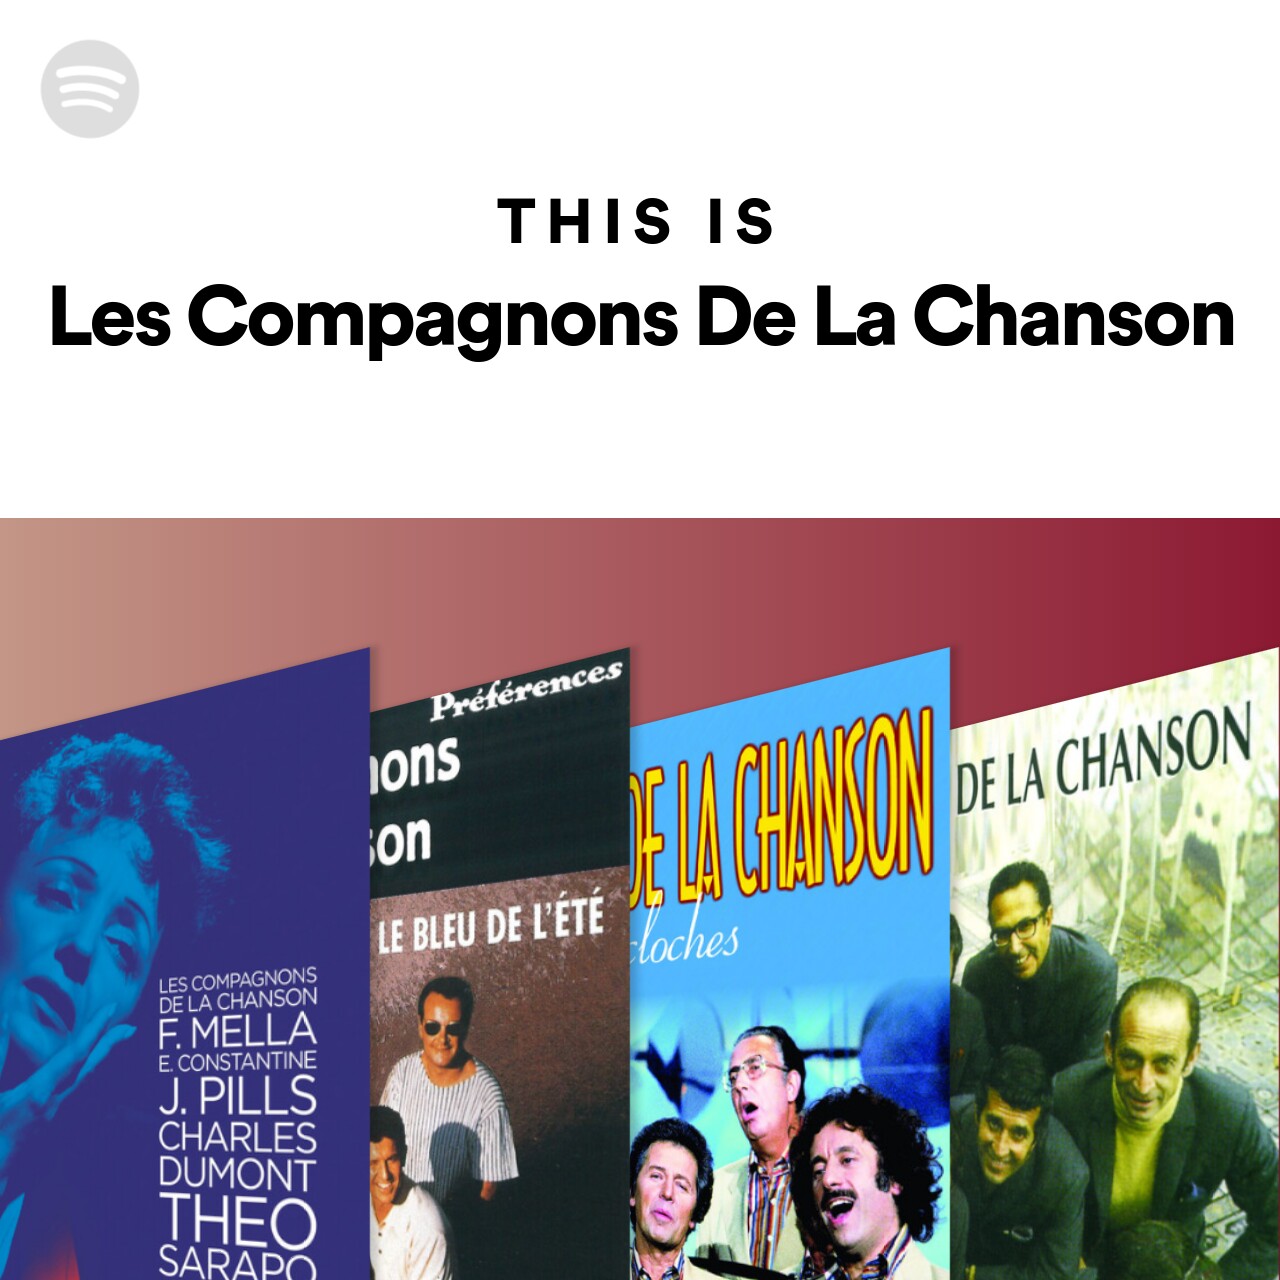 This Is Les Compagnons De La Chanson